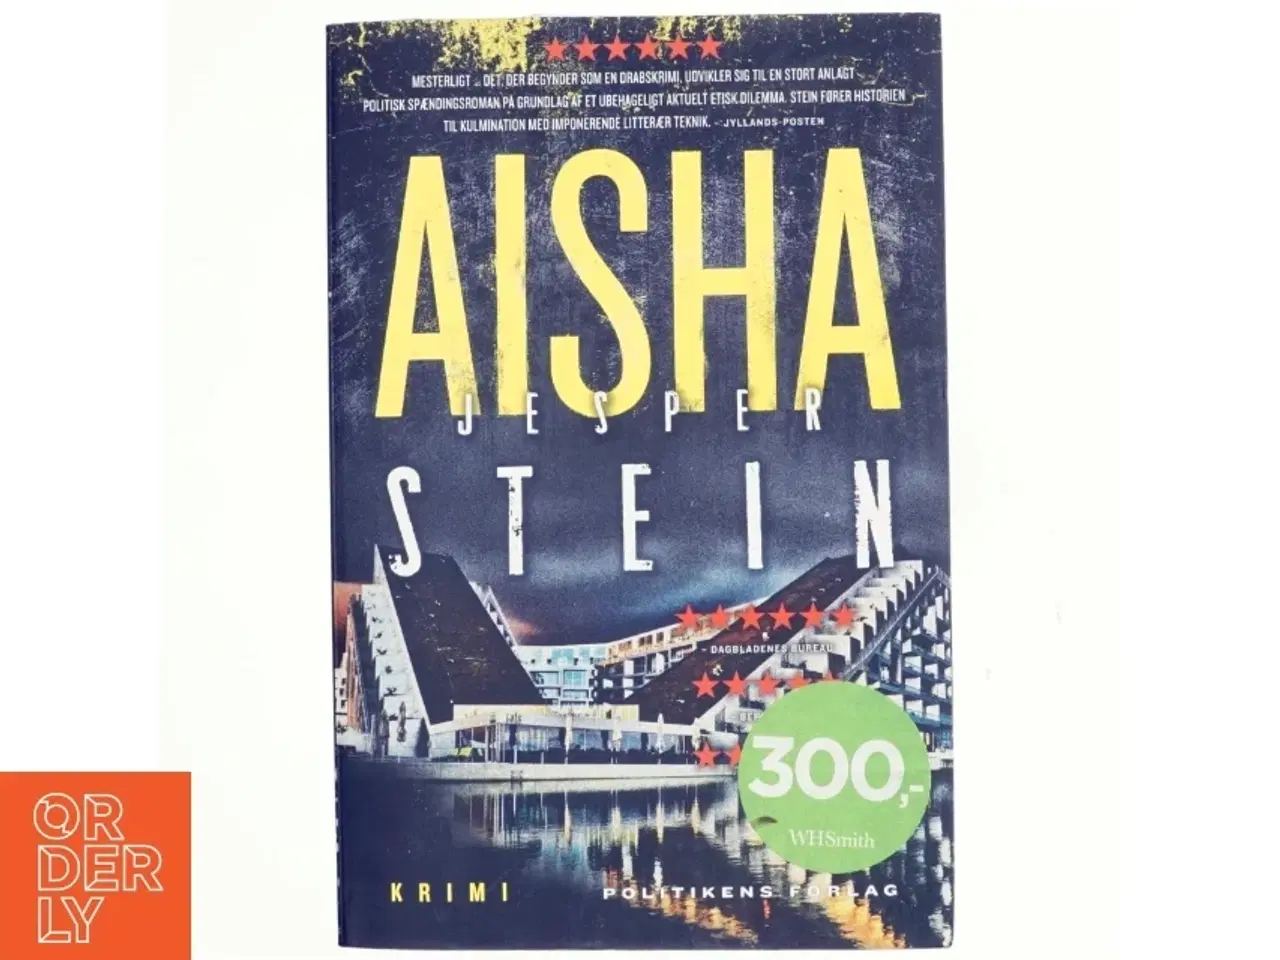 Billede 1 - Aisha : krimi af Jesper Stein (Bog)